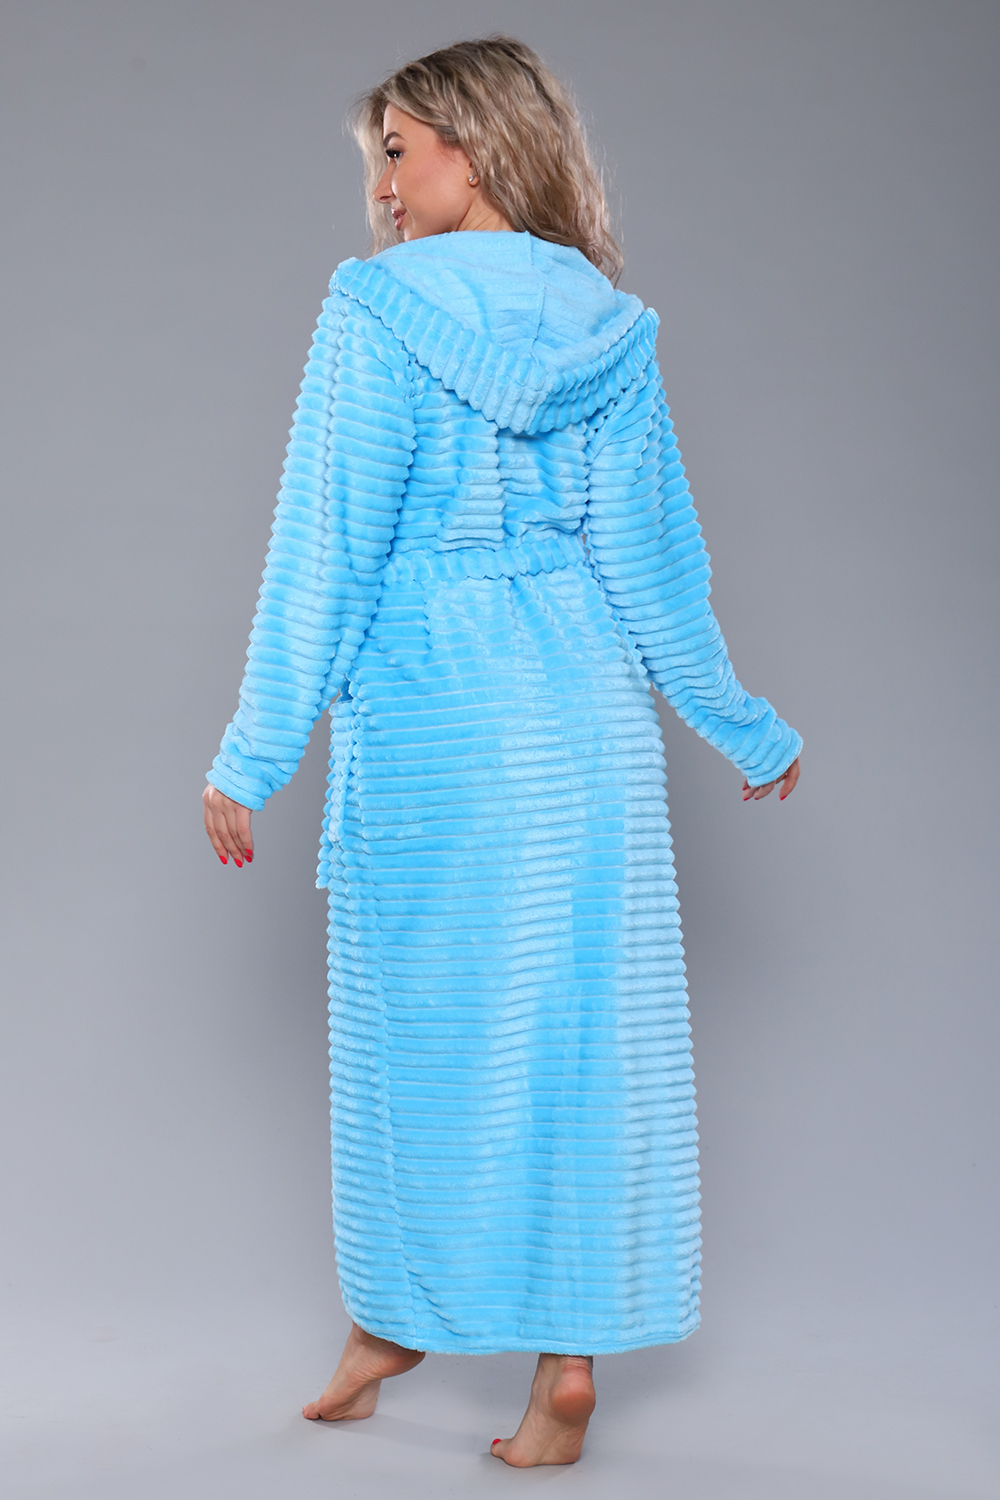 Фото товара 22794, длинный махровый халат голубого цвета с капюшоном